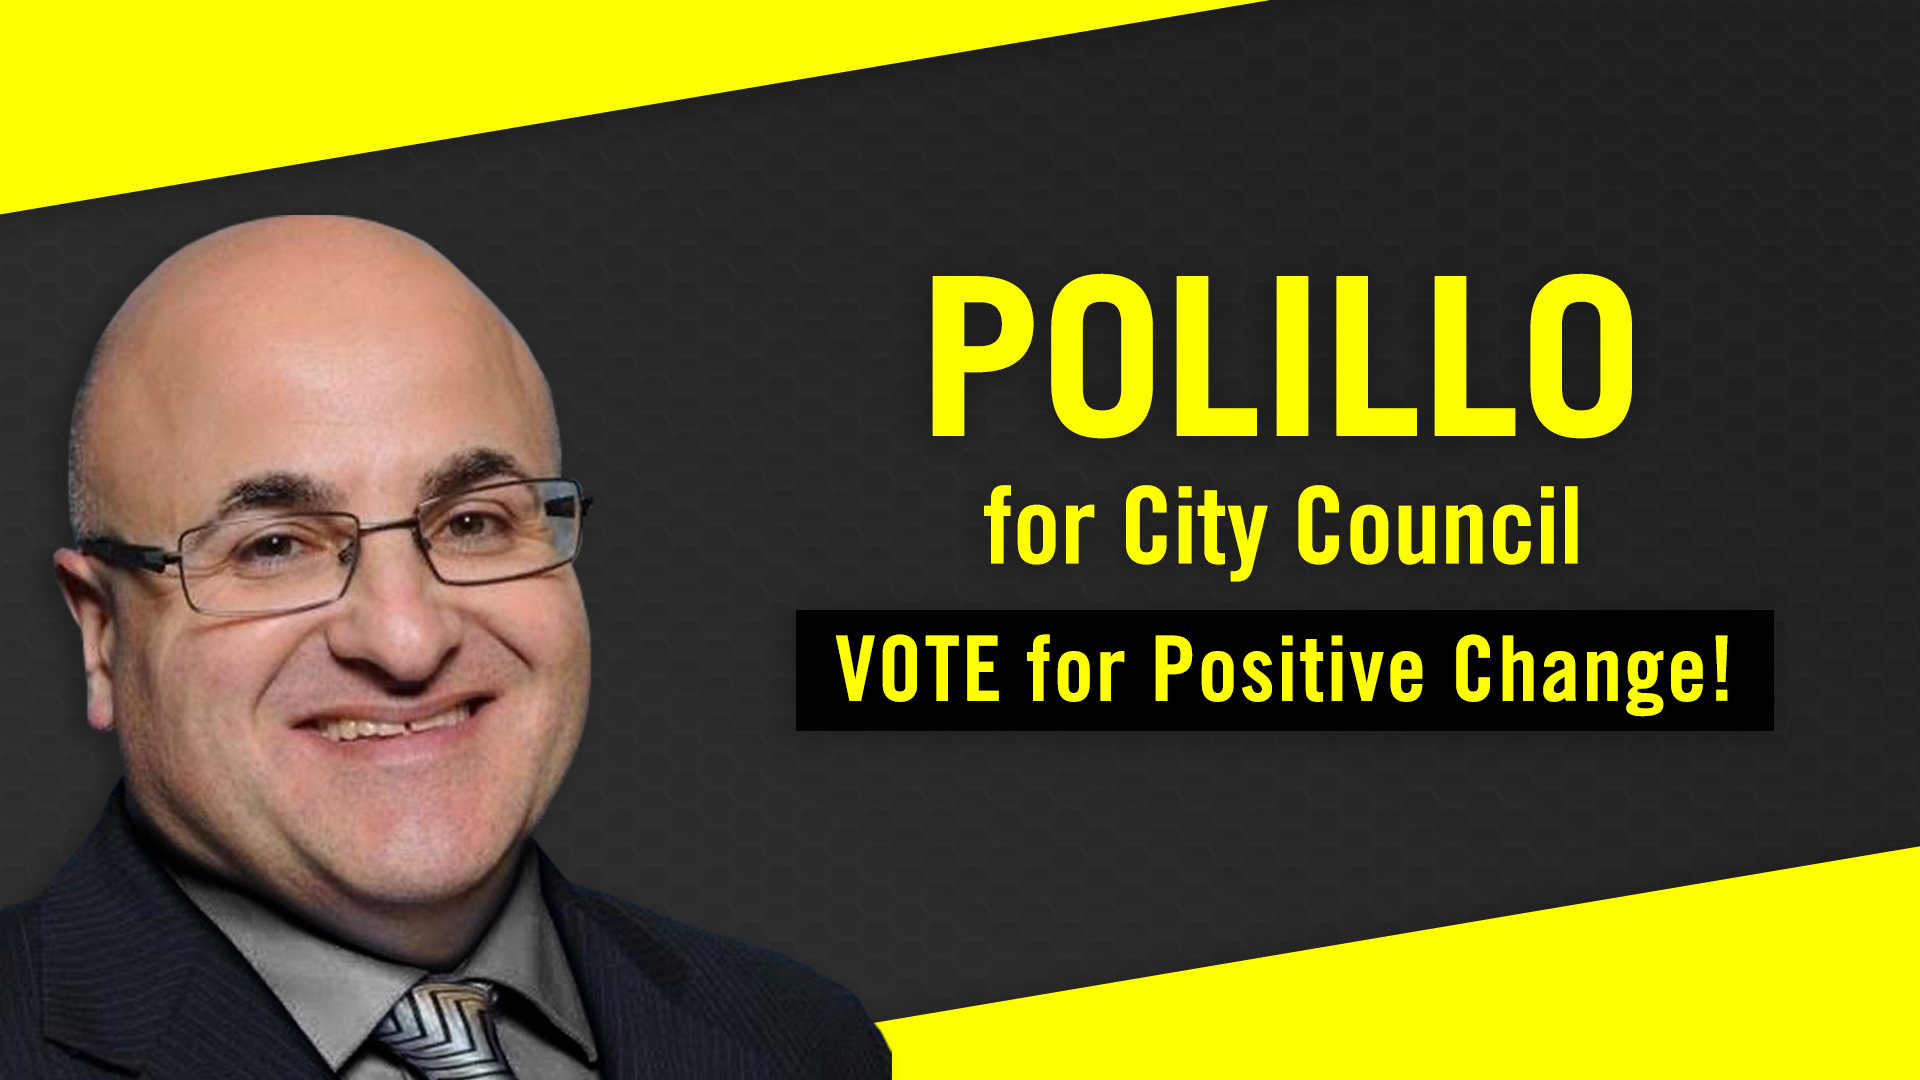 Ron Polillo For City Council